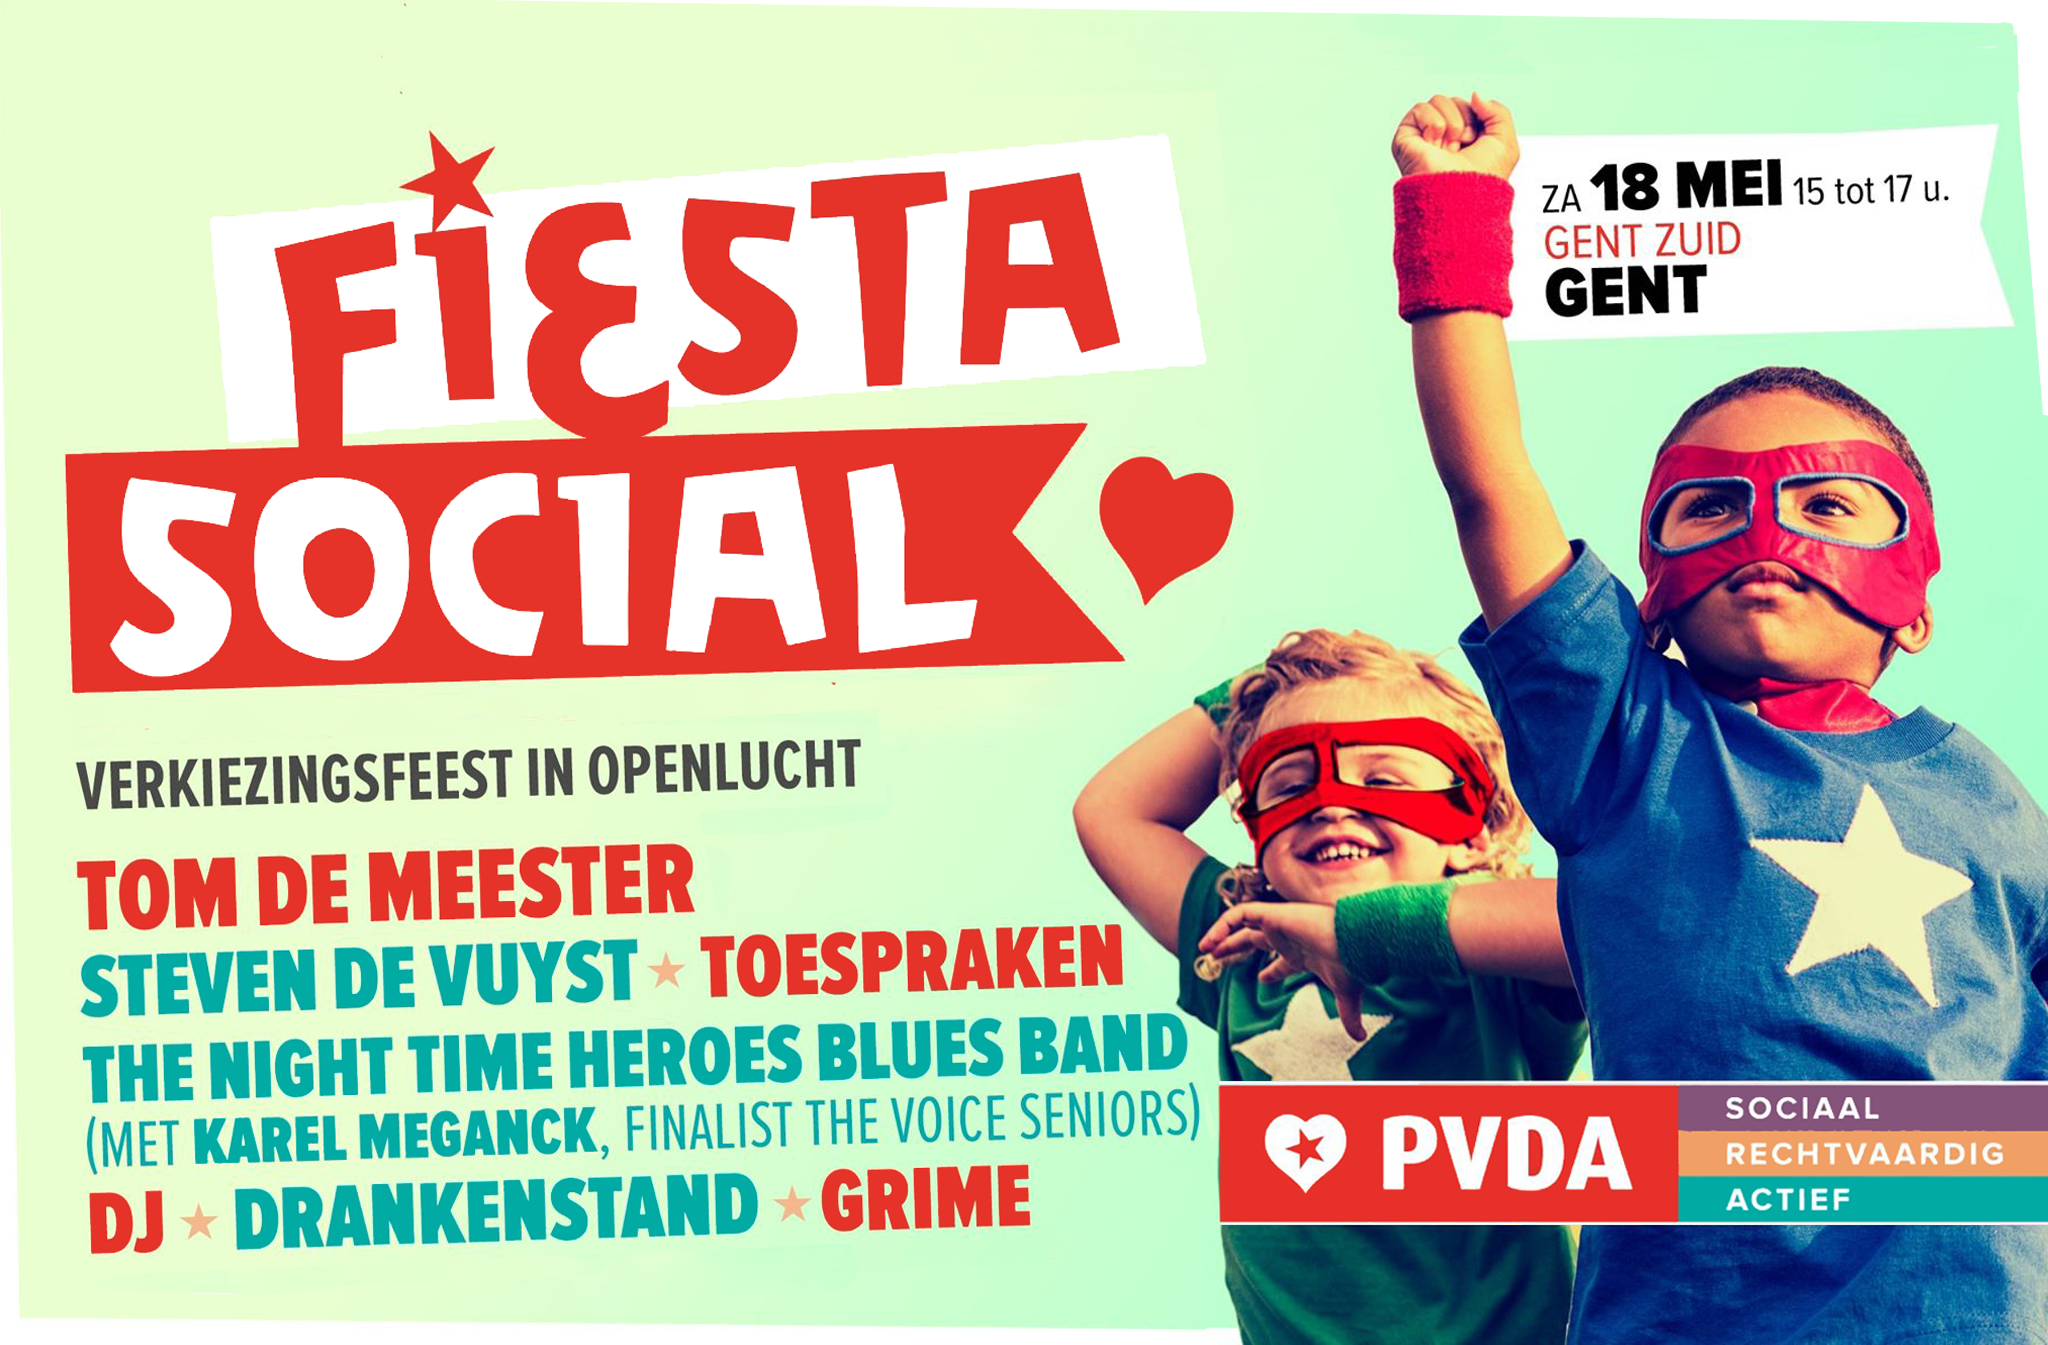 Fiesta Social - verkiezingsfeest in openlucht